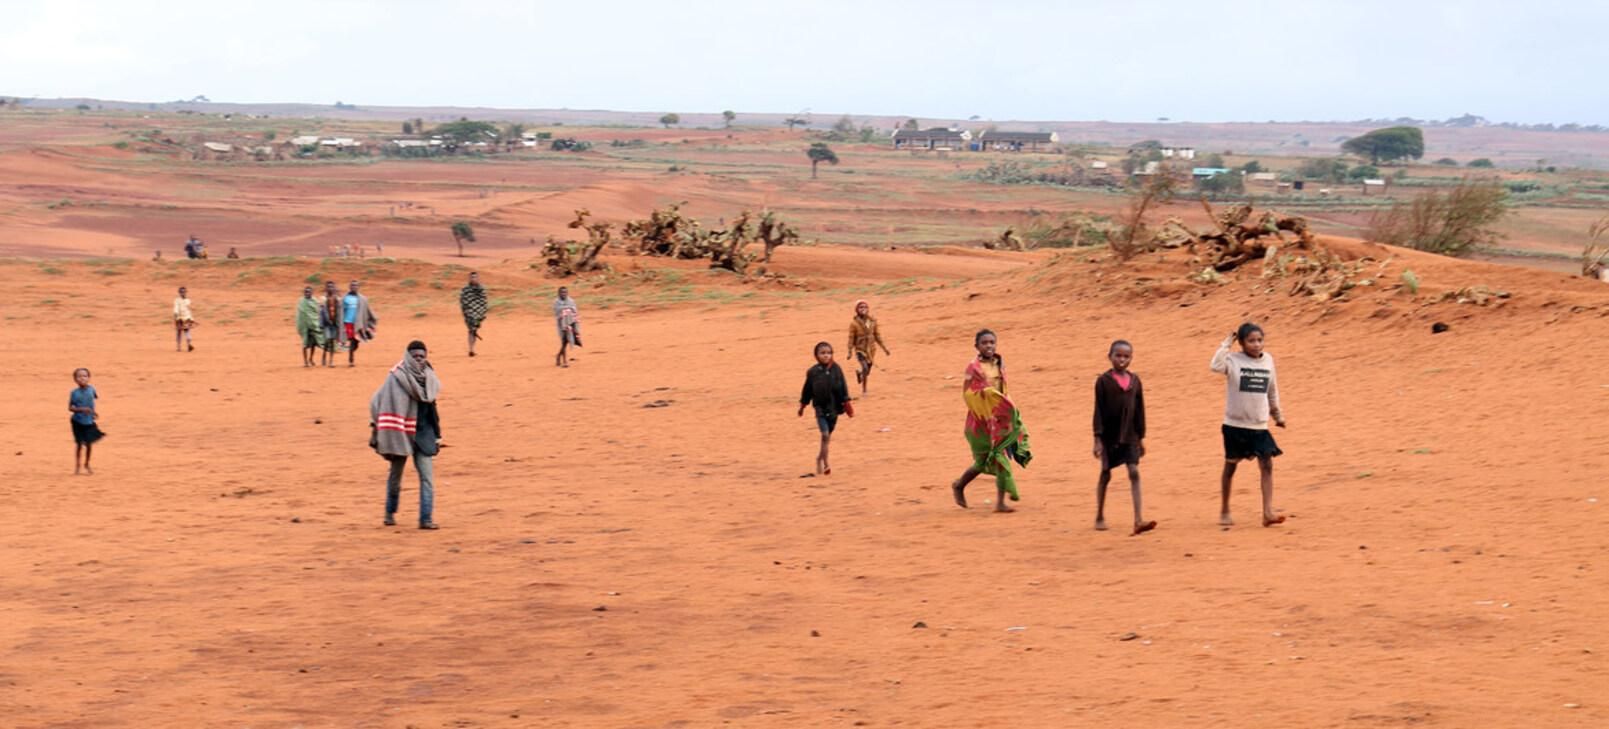 Первый в мире голод из-за изменения климата может возникнуть на Мадагаскаре